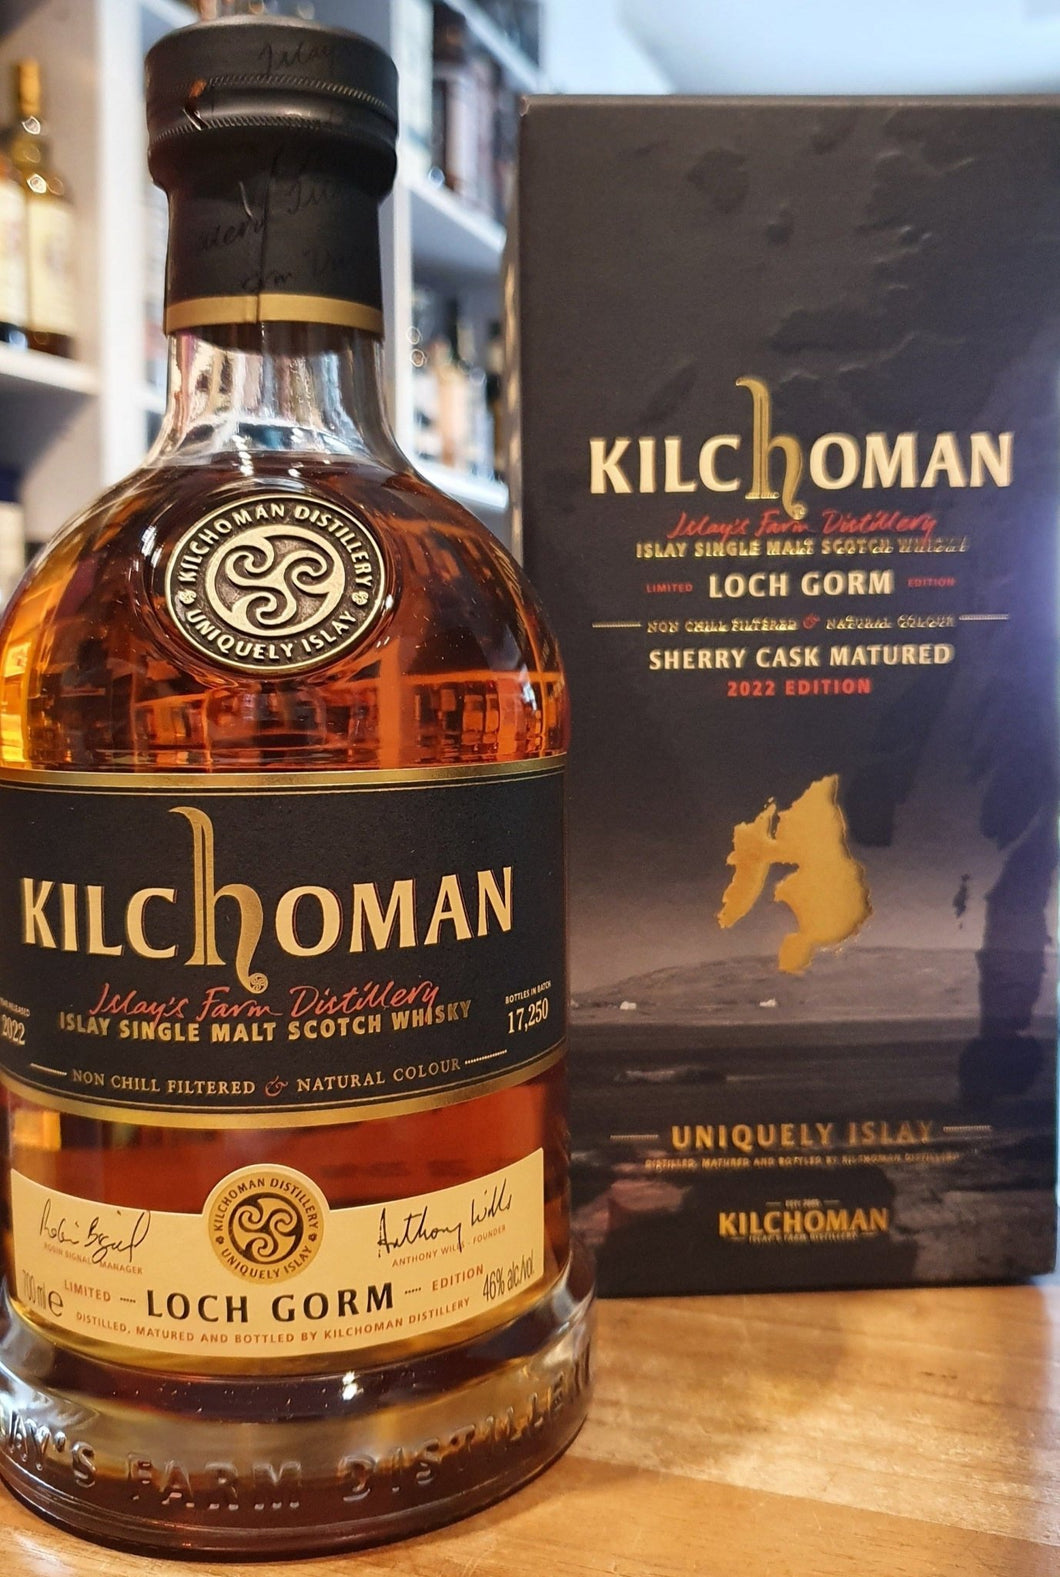 Kilchoman Whisky Loch Gorm 2022 100% Sherry Fassgelagerter Islay Schottland single malt scotch whisky 0.7l 46 % 50ppm   streng limitiert für D auf ca 2400 Flaschen. insgesamt ca 17.250 Flaschen.   Die Loch Gorm Limited Edition 2022 wurde in Oloroso-Sherry-Fässern gereift, die von der renommierten Bodega Jose y Miguel Martin stammen, von der auch Glenfarclas ihre berühmten Sherry-Fässer bezieht